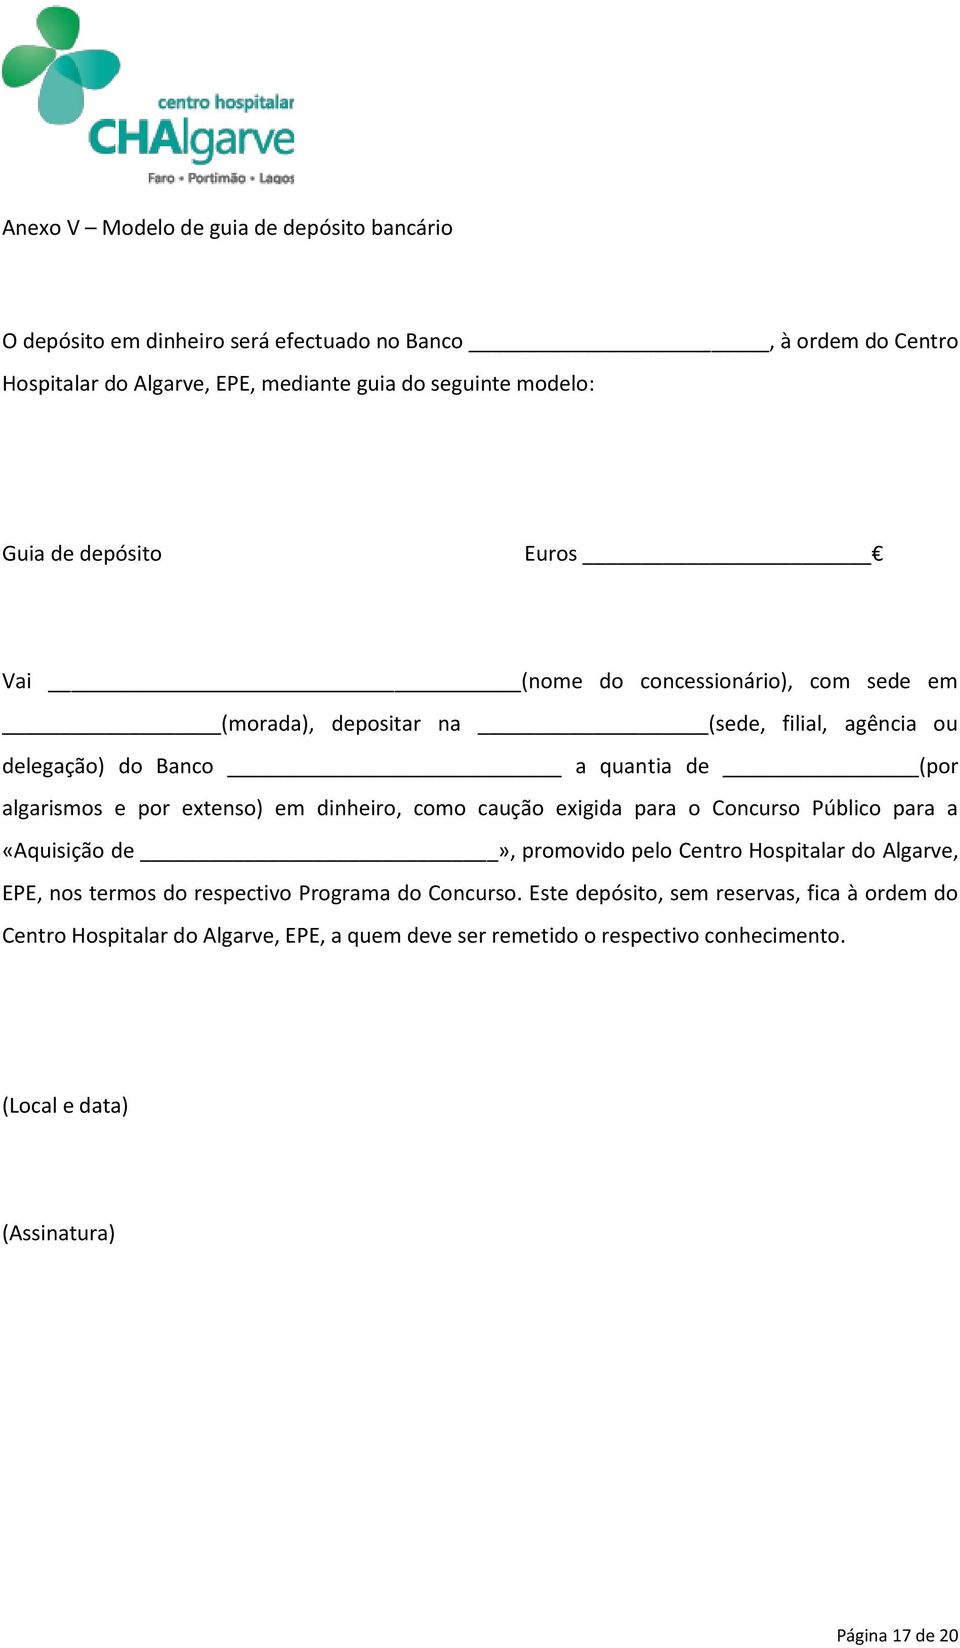 extenso) em dinheiro, como caução exigida para o Concurso Público para a «Aquisição de», promovido pelo Centro Hospitalar do Algarve, EPE, nos termos do respectivo Programa do